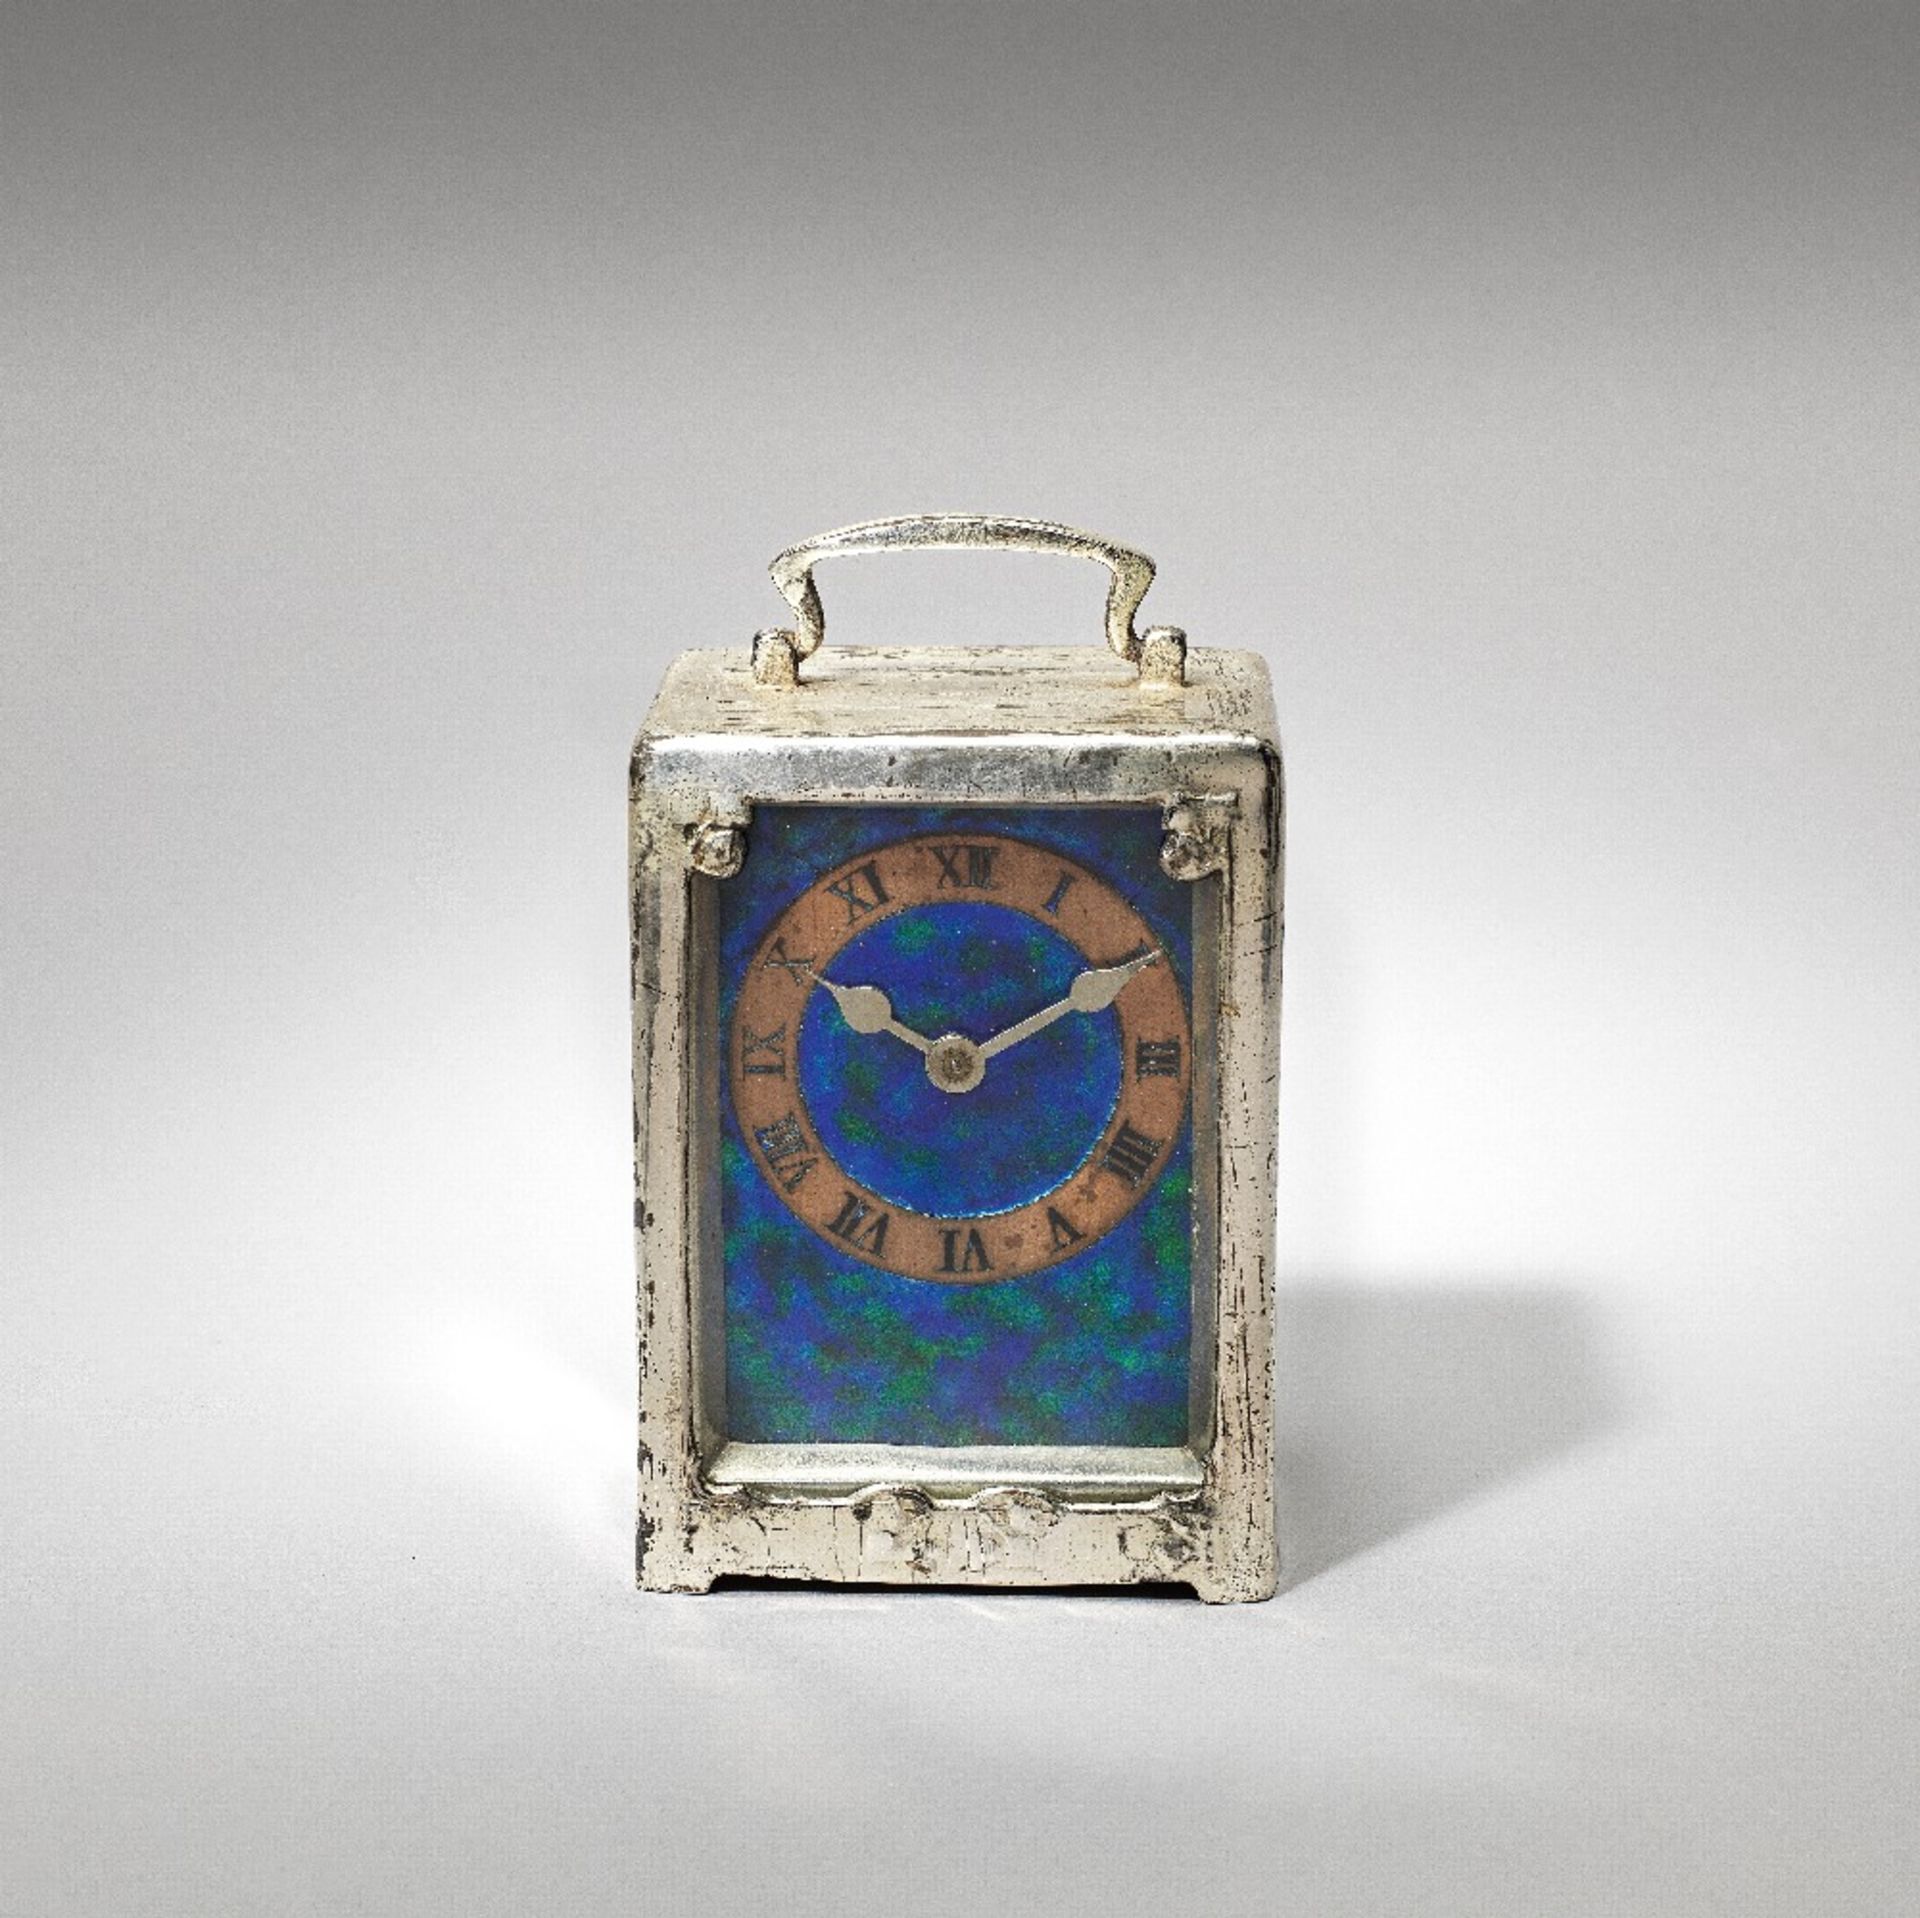 Liberty & Co. 'Tudric' cased carriage clock, model no. 0721, circa 1905